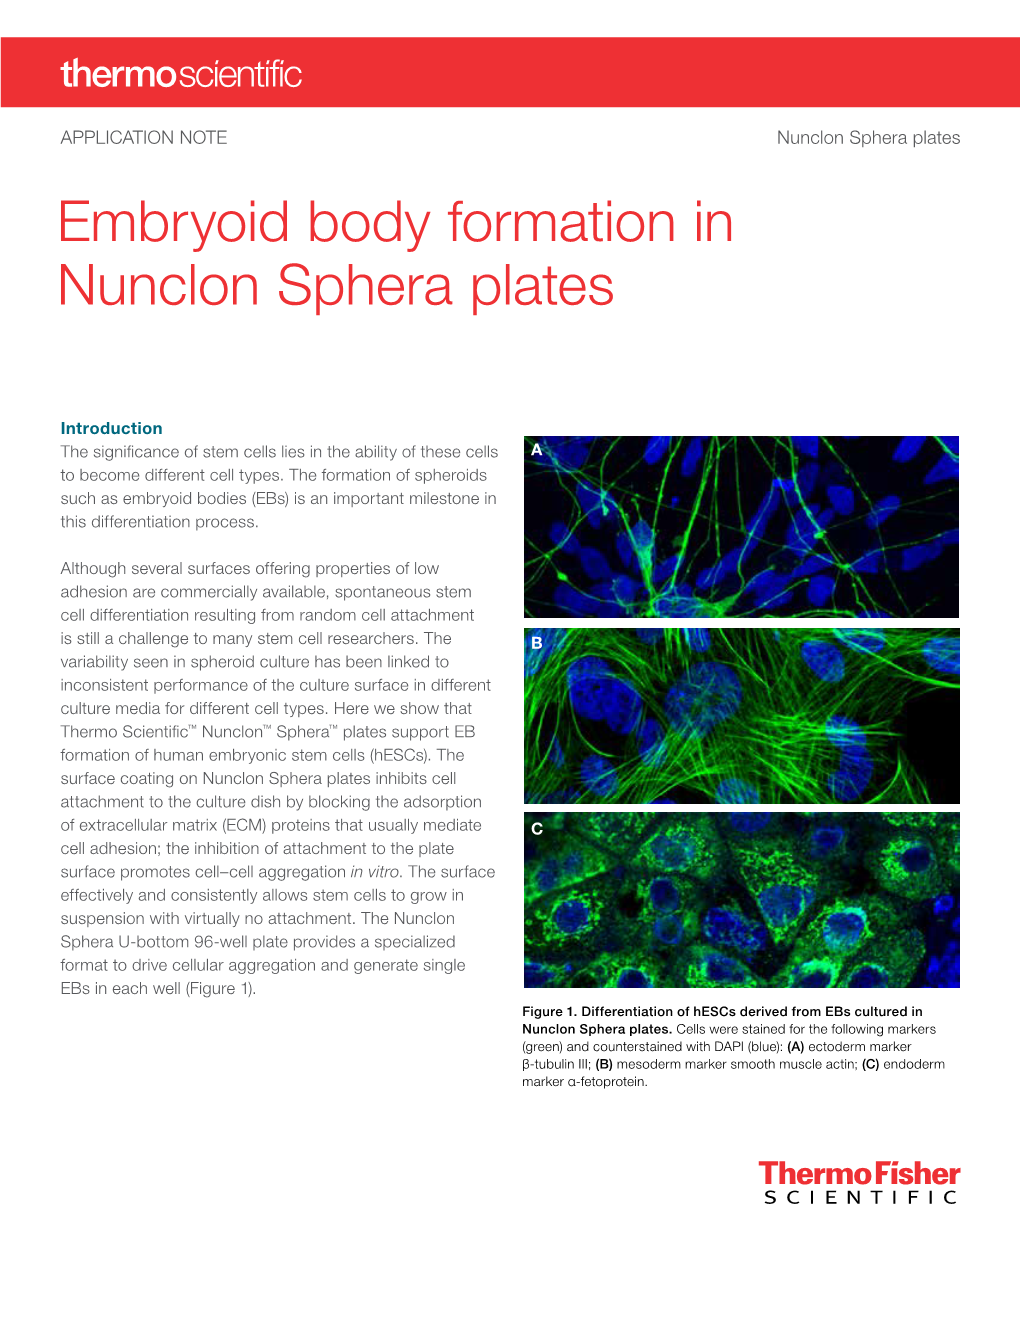 Embryoid Body Formation in Nunclon Sphera Plates